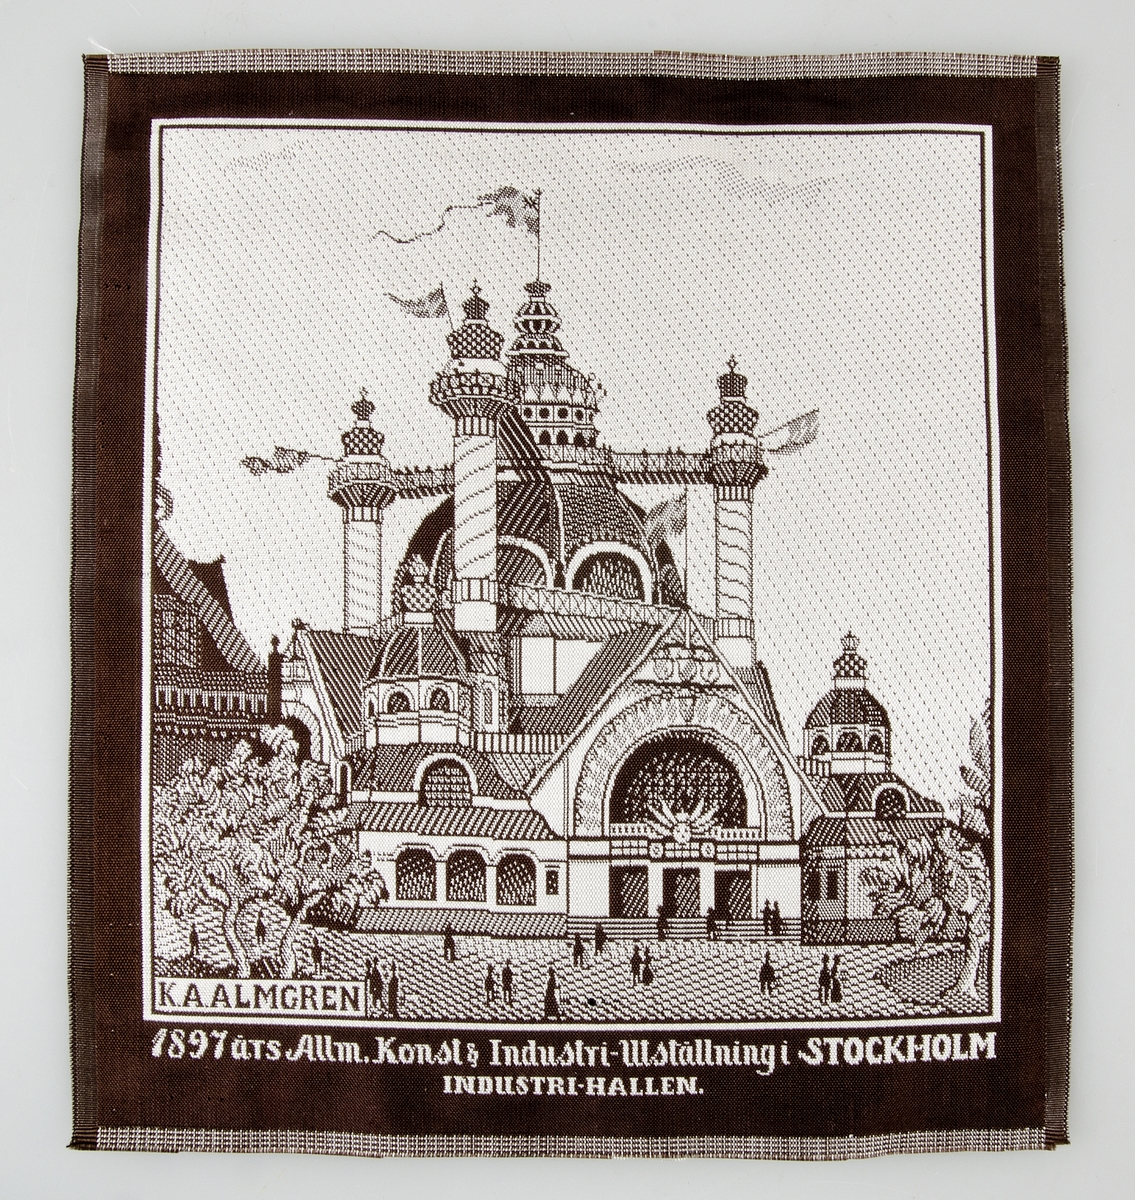 Näsduk av mönstervävt siden i brunt och vitt med text: "1897 års Allm. Konst & Industri-Utställning i STOCKHOLM, INDUSTRI-HALLEN". Signerad K. A. ALMGREN.